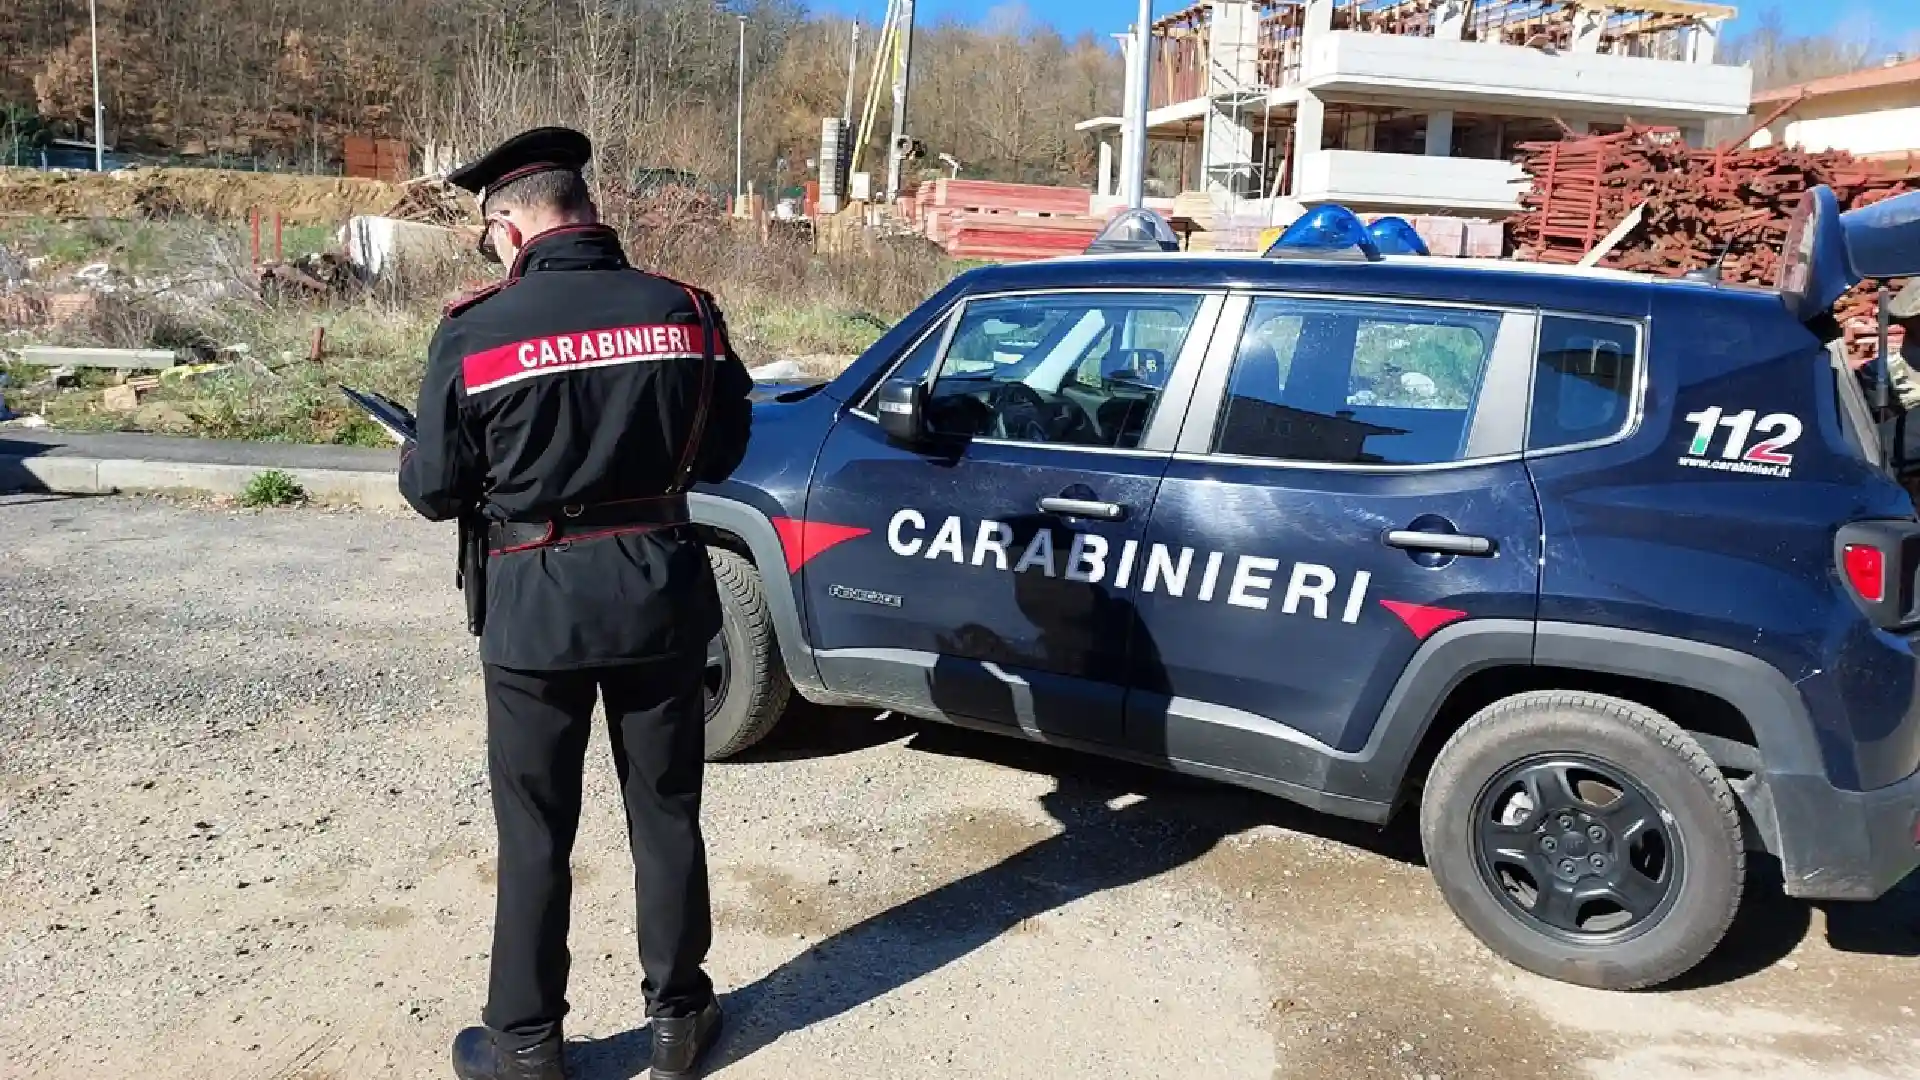 chiuso cantiere crognaleto carabinieri ispettorato lavoro